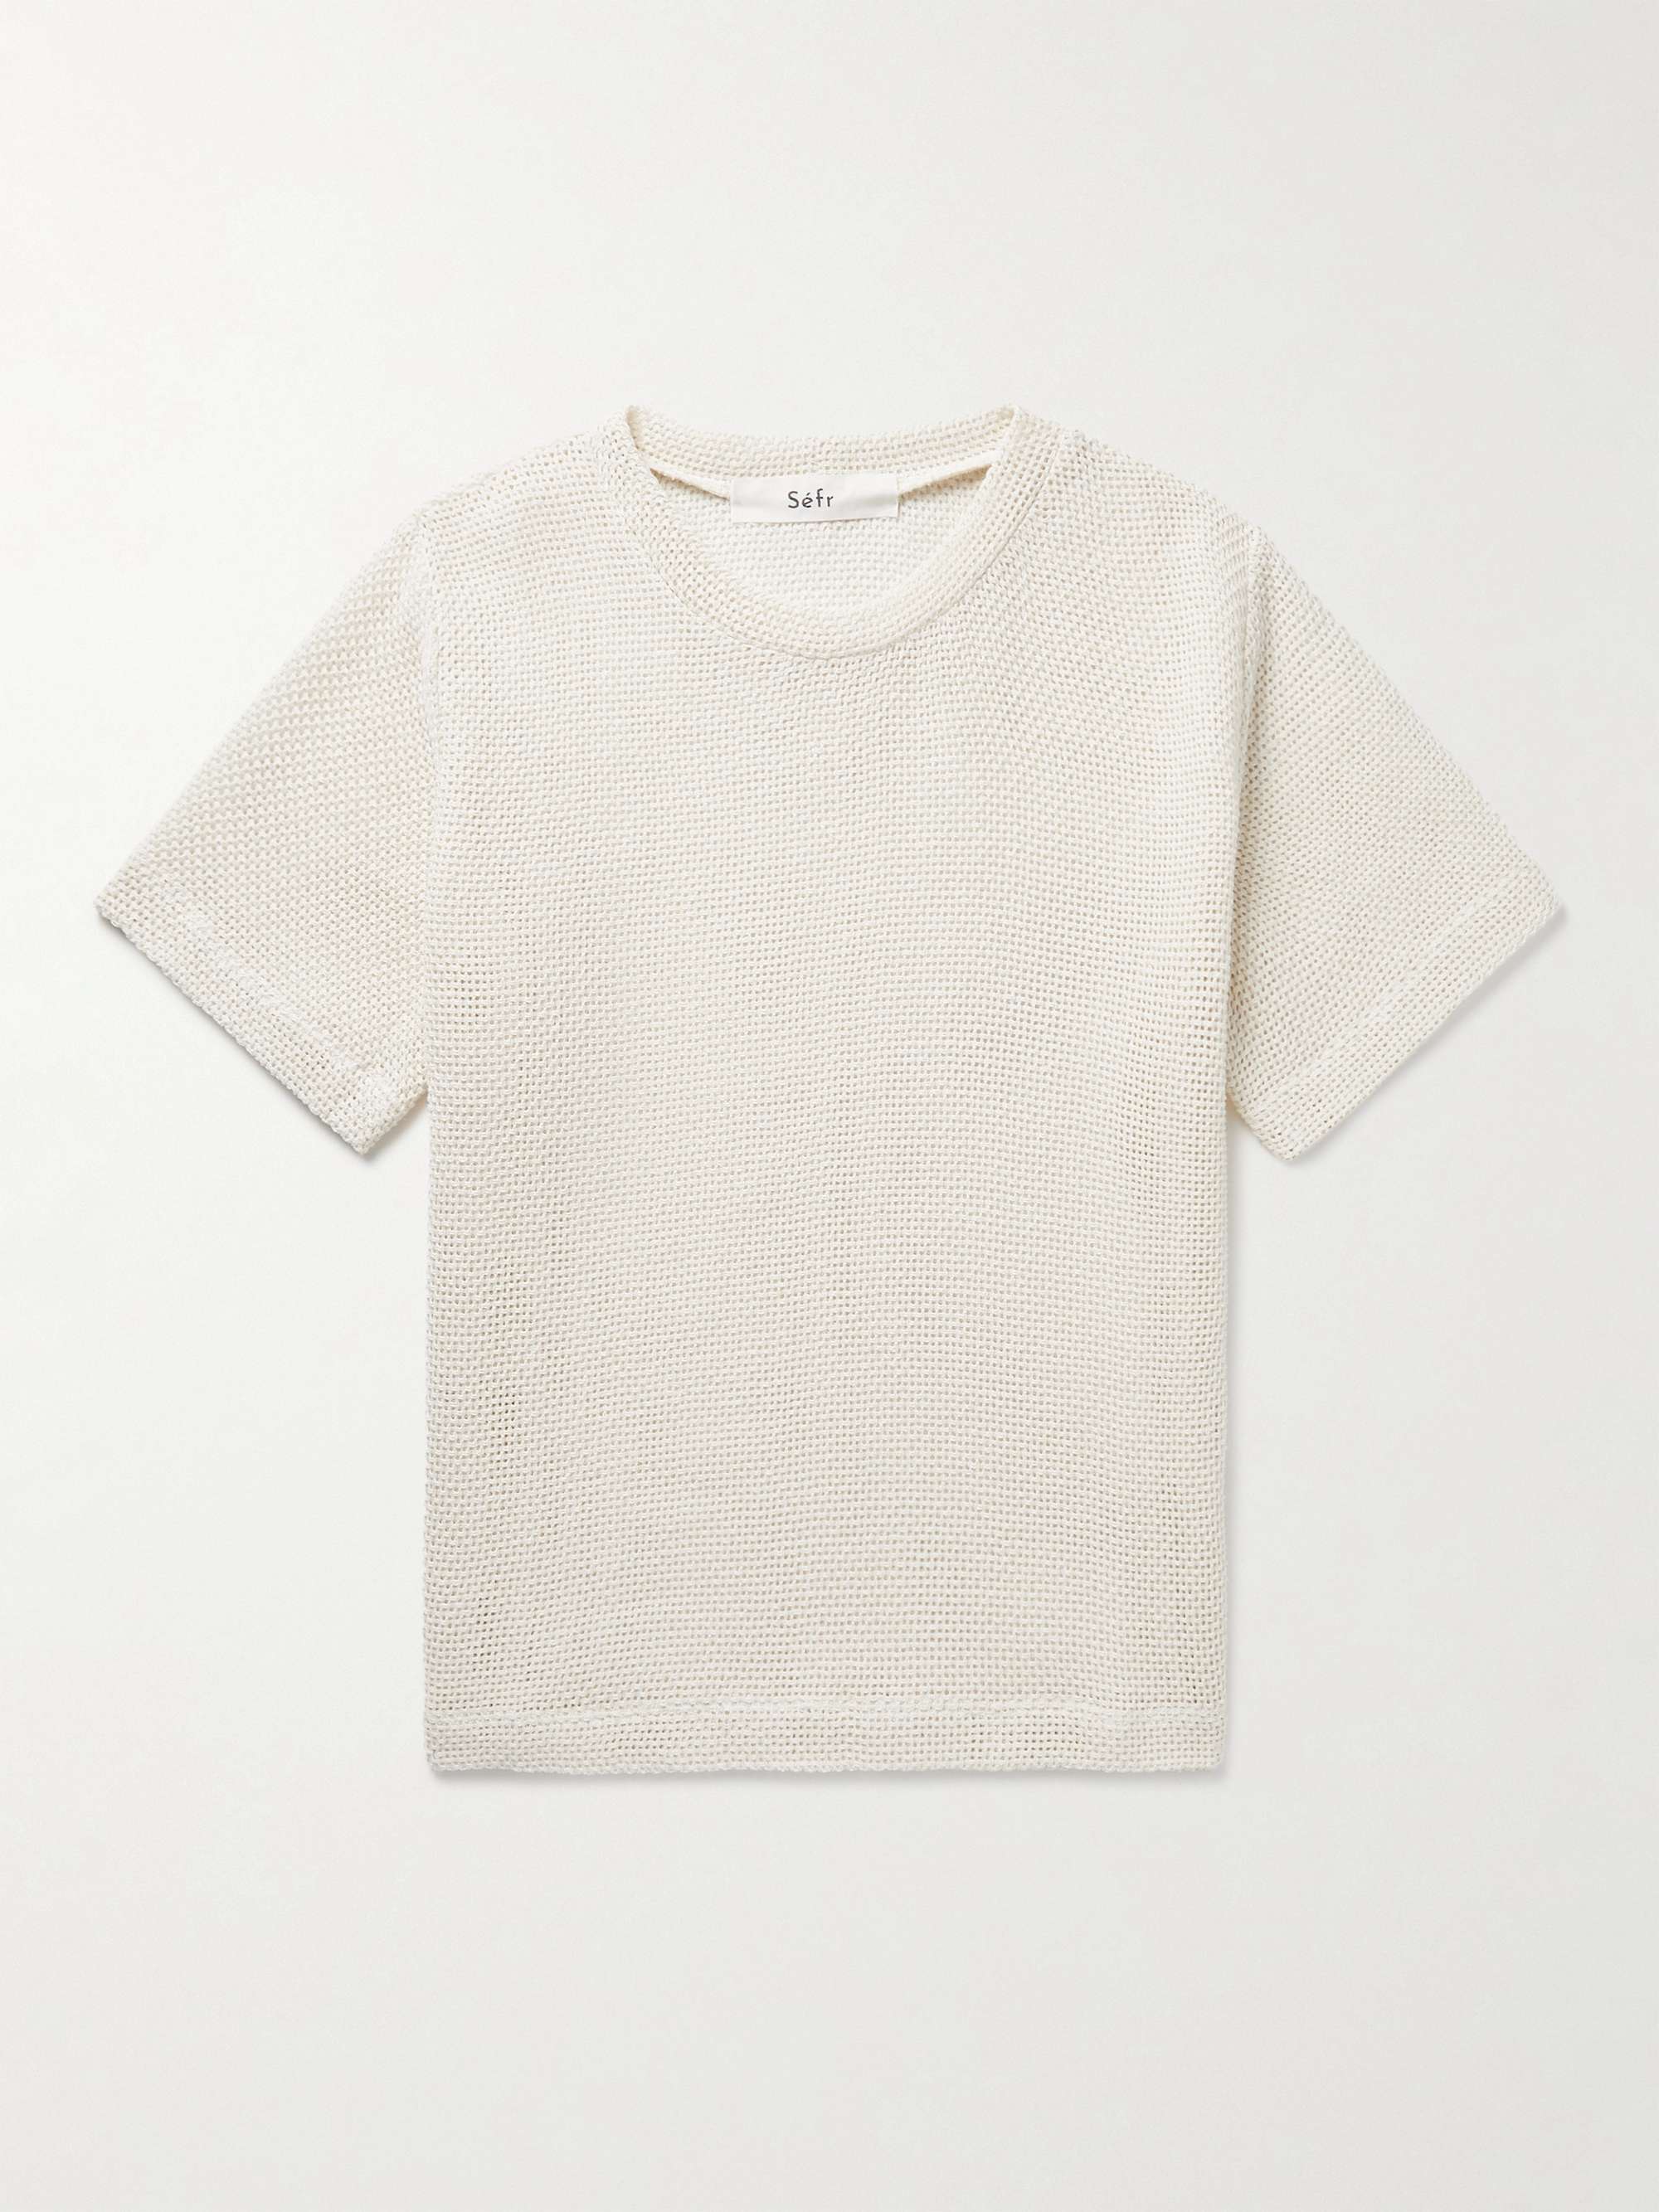 SÉFR Haven Open-Knit Cotton-Blend T-Shirt | MR PORTER